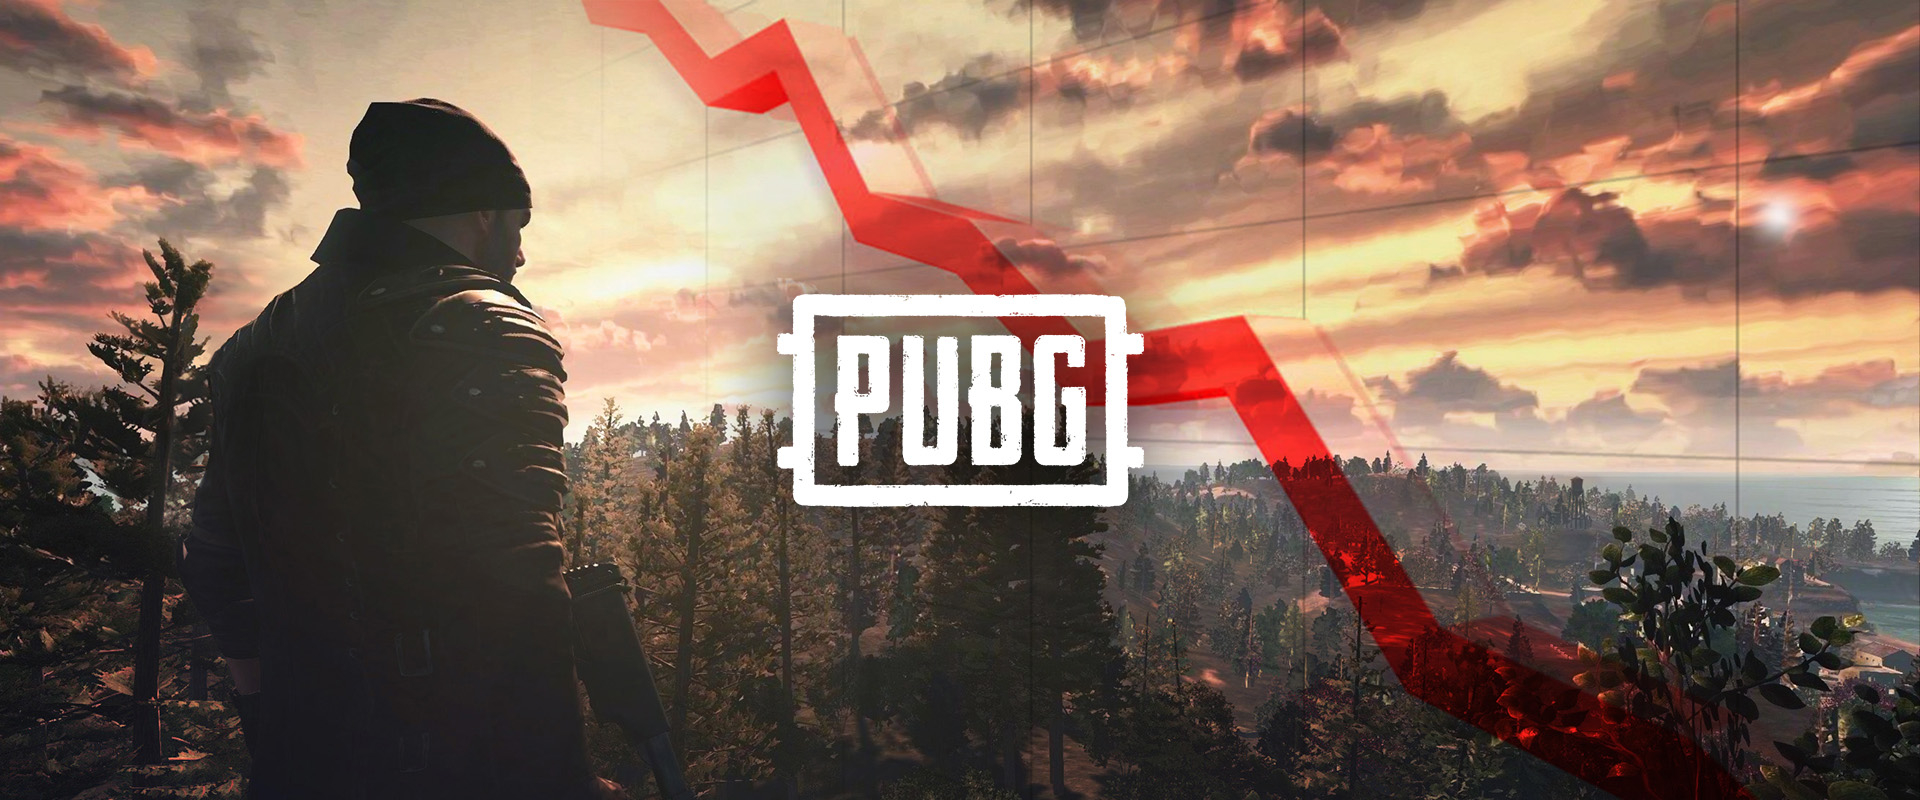 A PUBG átlag játékosszáma bőven félmillió alá esett októberben!